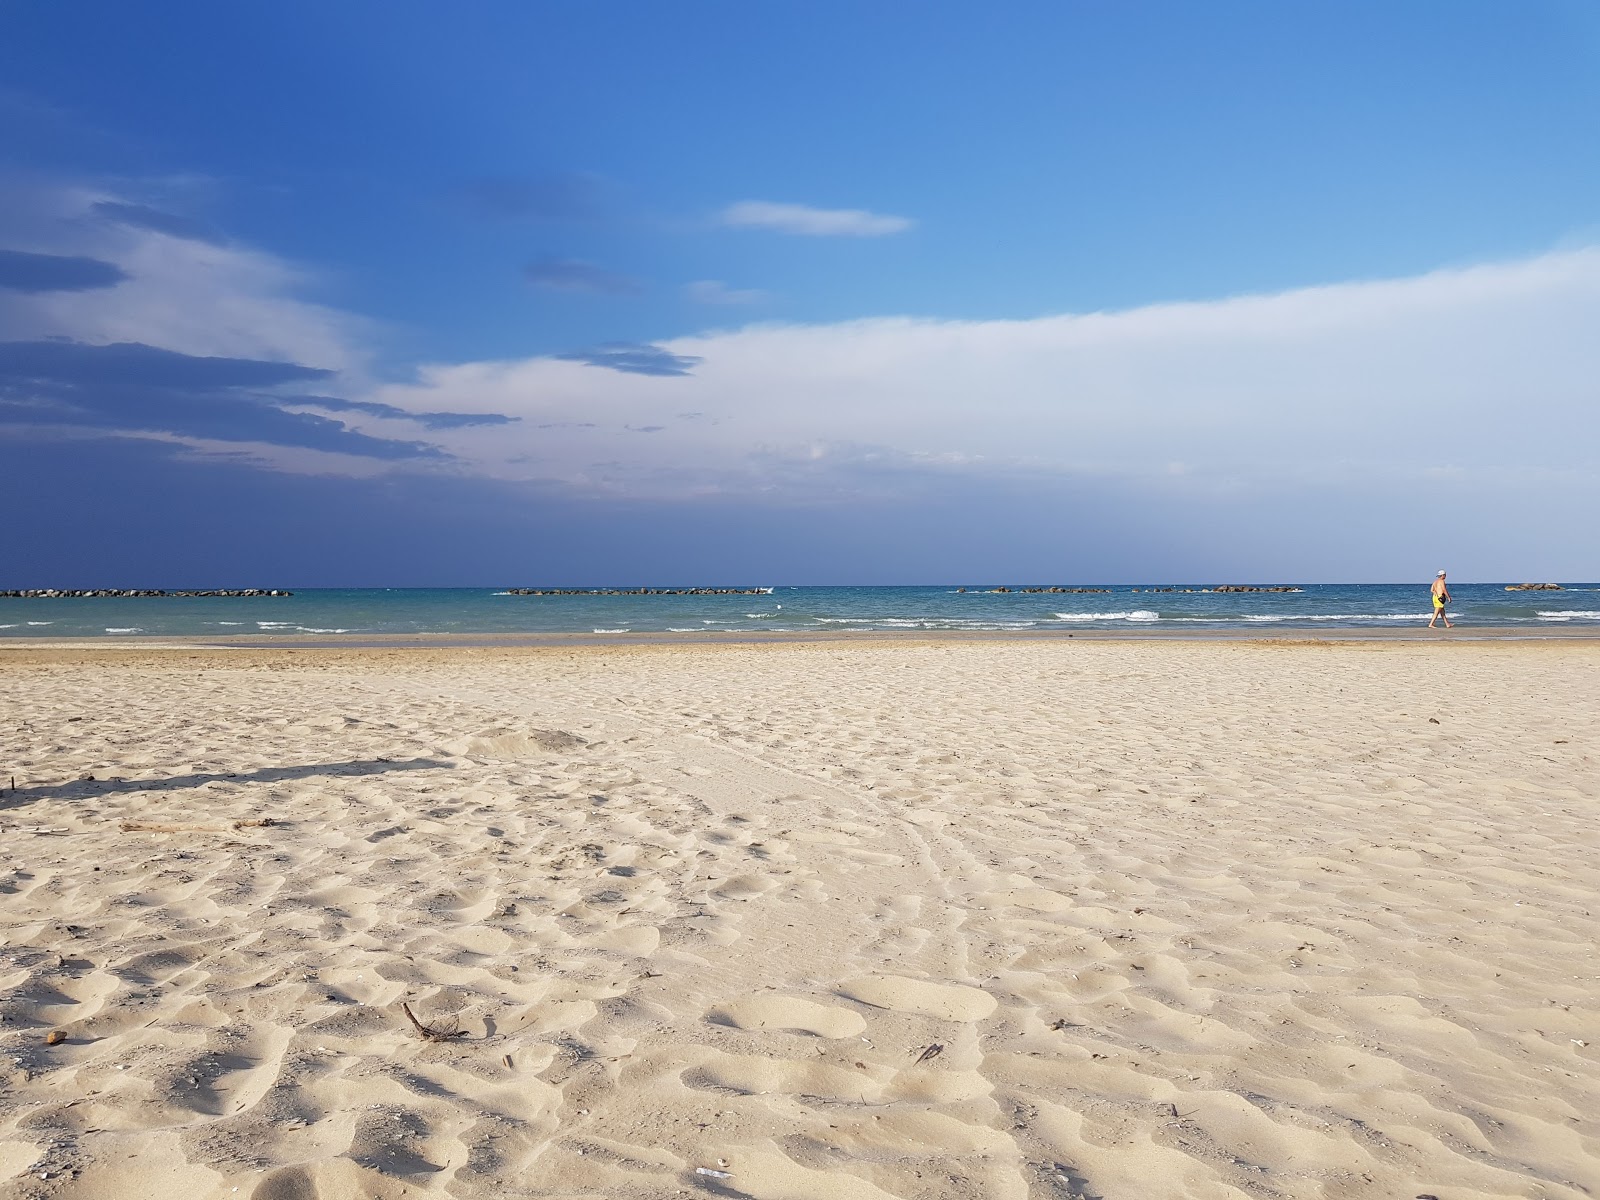 Fotografie cu Senigallia beach - locul popular printre cunoscătorii de relaxare